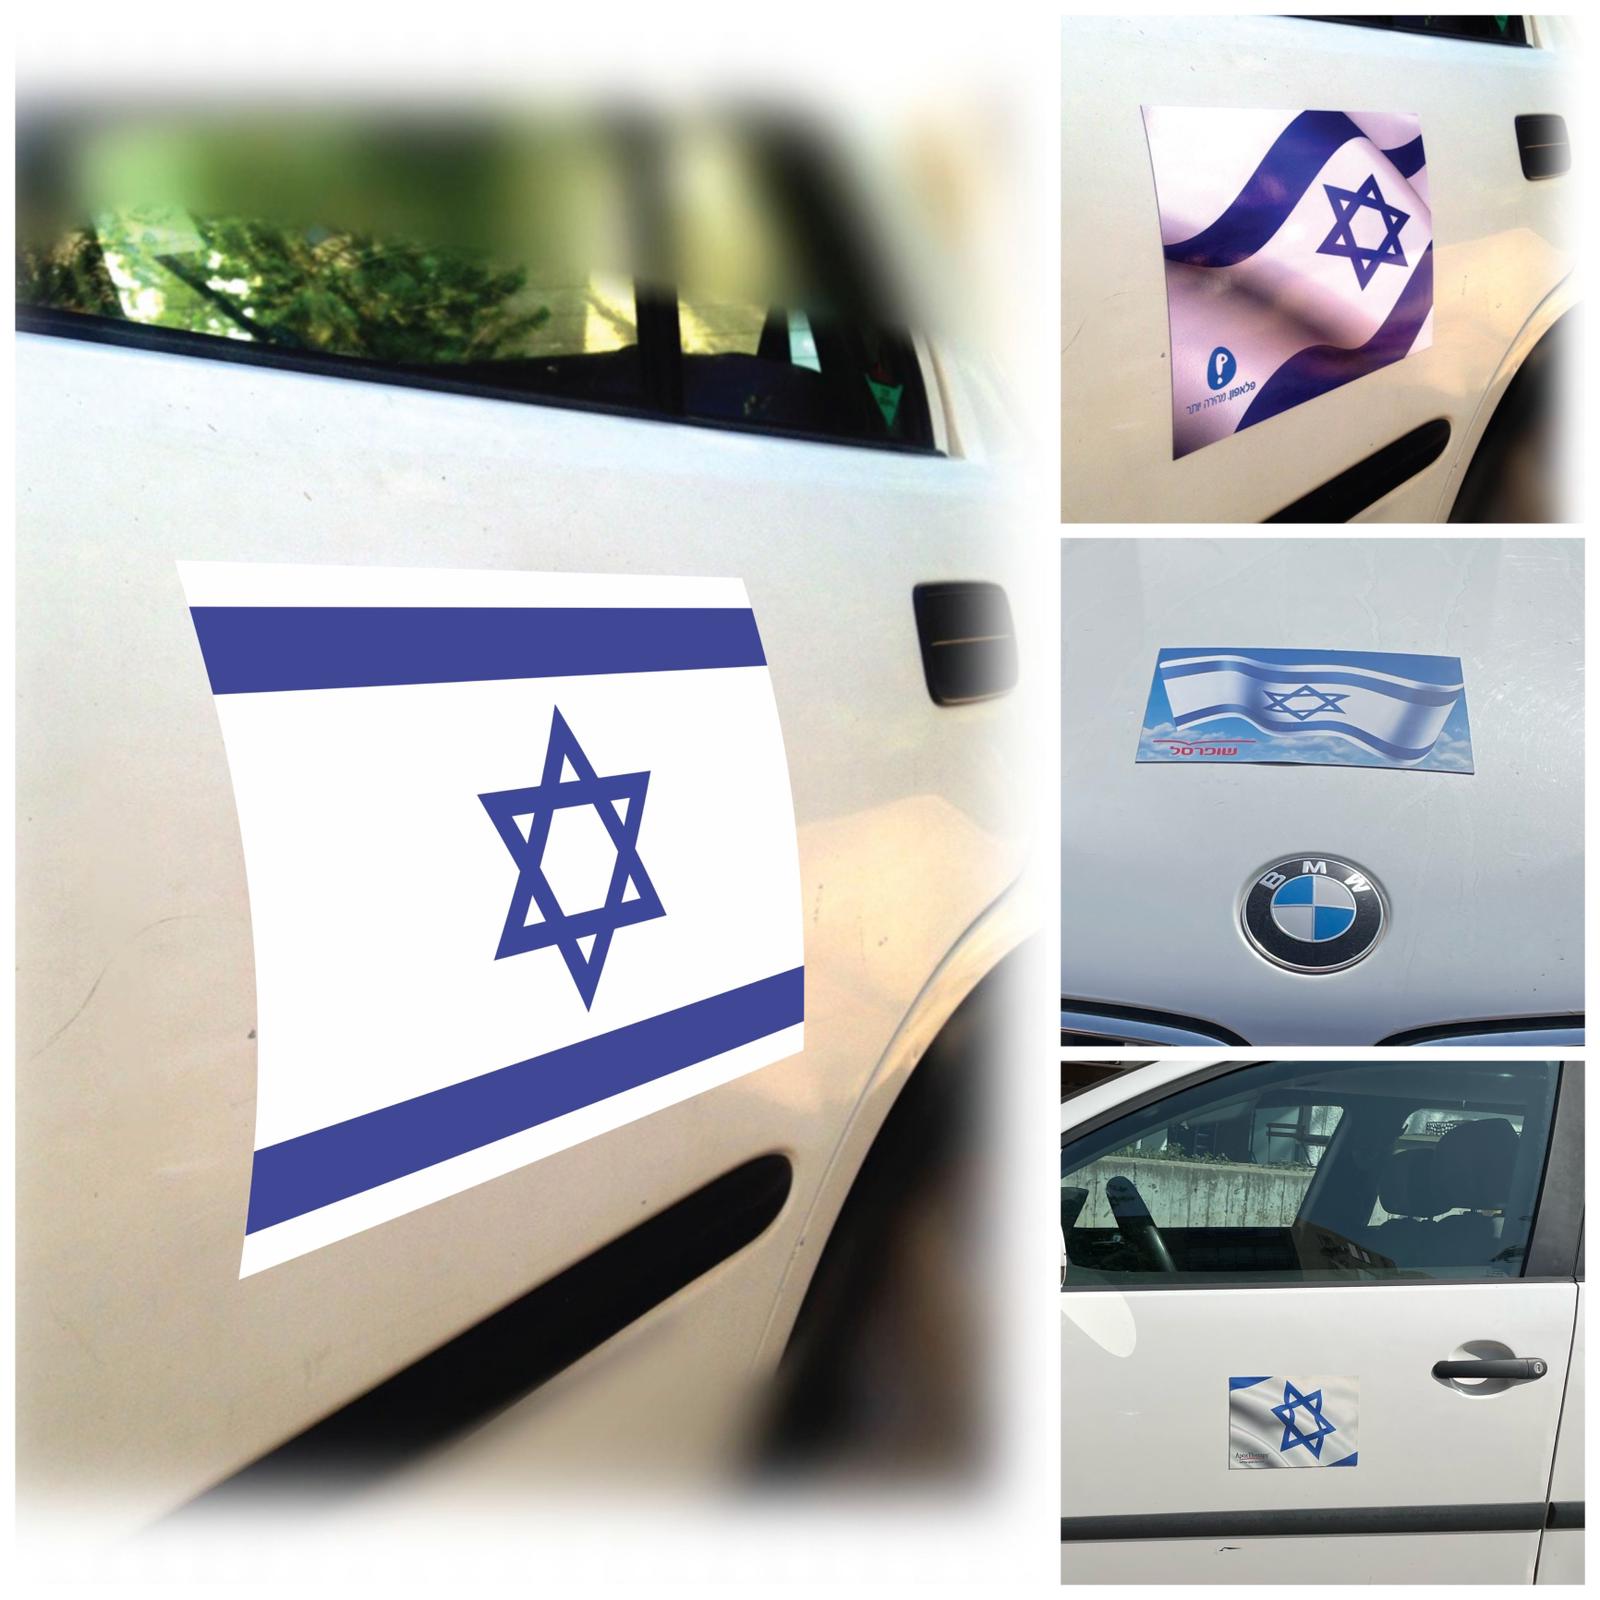 דגל ישראל לרכב מגנט a5 וa4